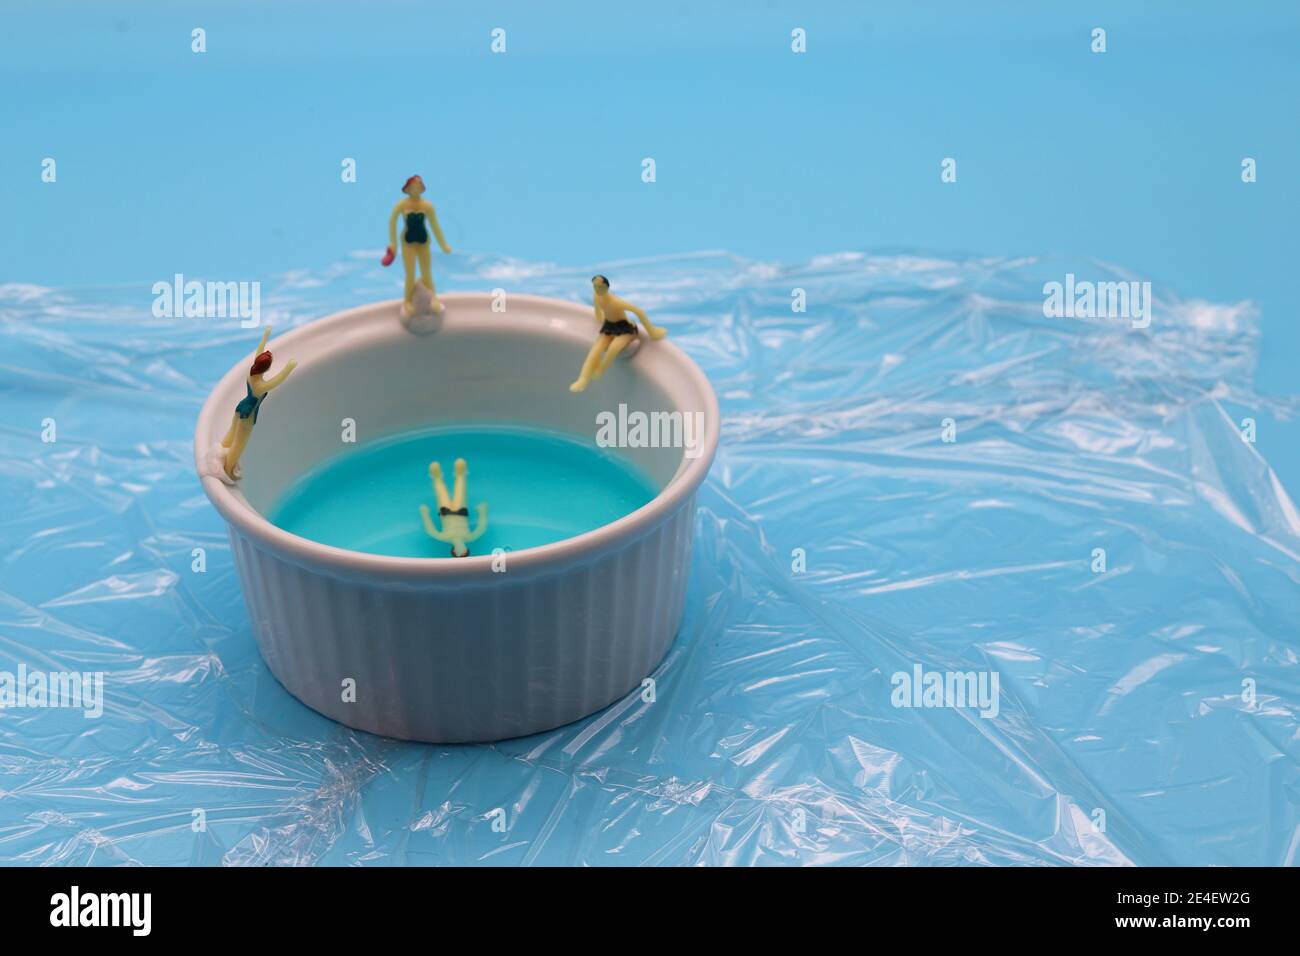 Miniature swimmers and an anti bac ramekin swimming pool. Stock Photo